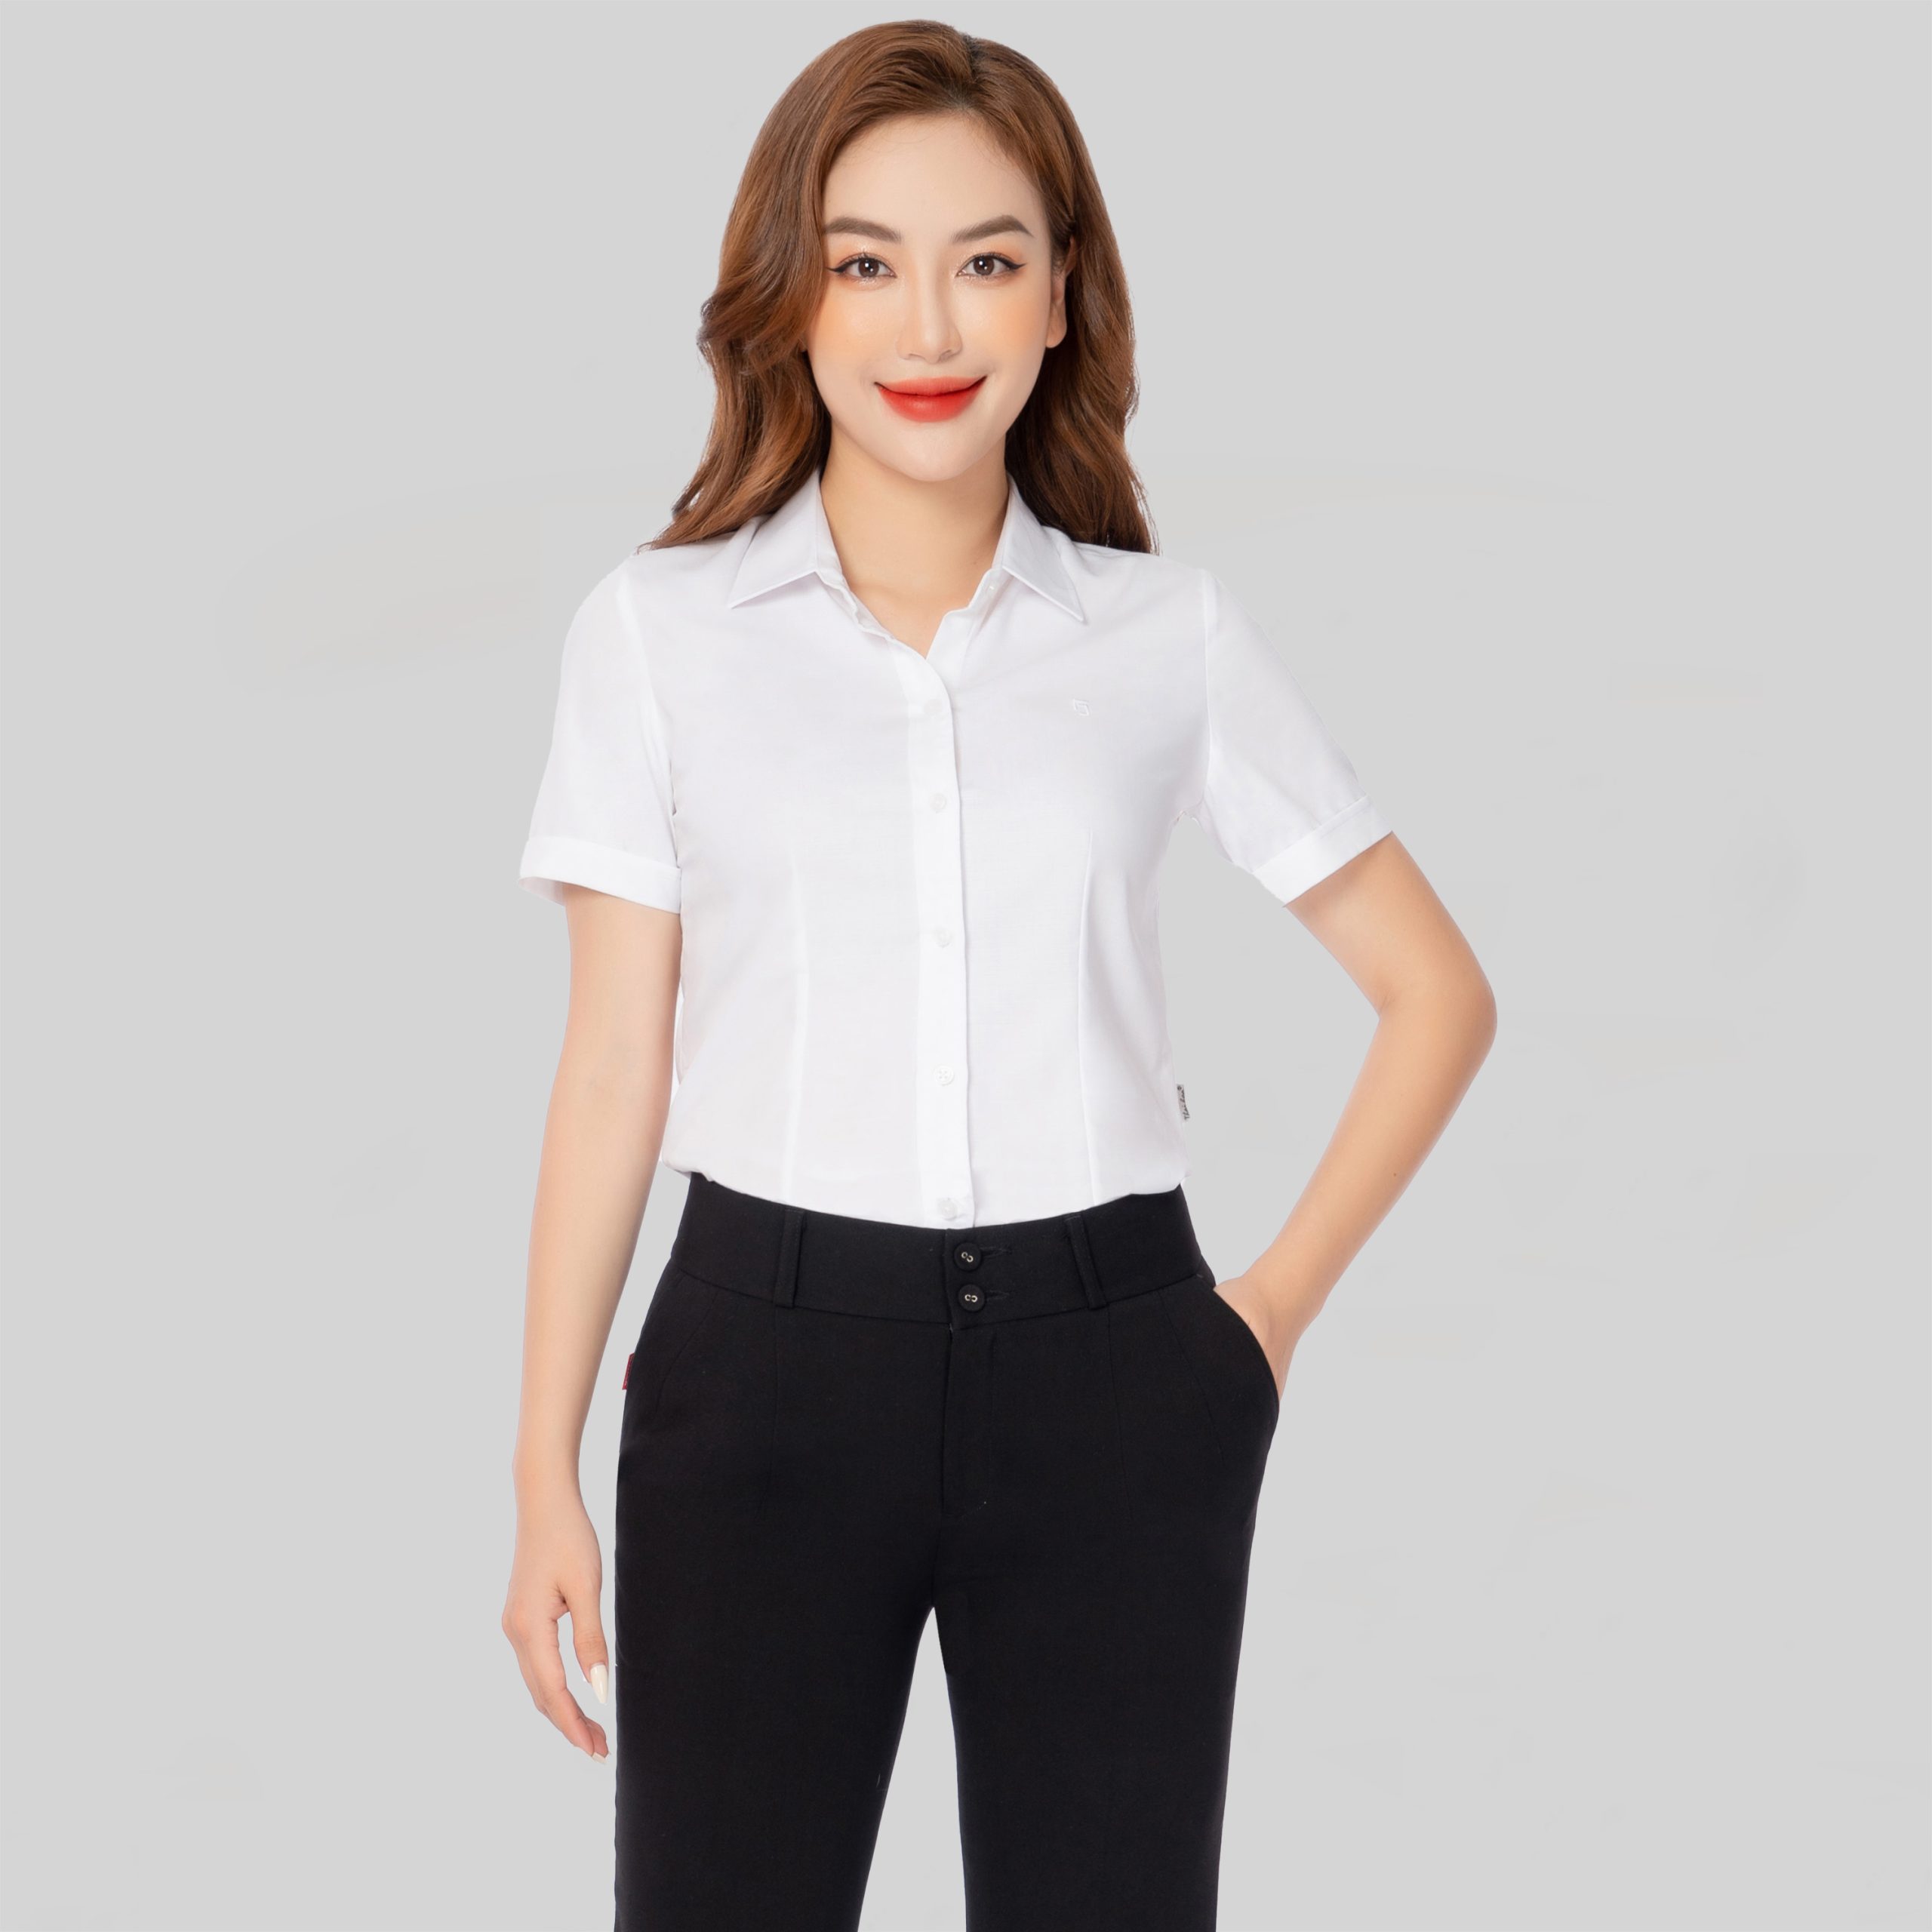 Áo sơ mi nữ công sở thiết kế ngắn tay vải sợi tre cao cấp nhiều màu Thái Hòa ASW0301-R11